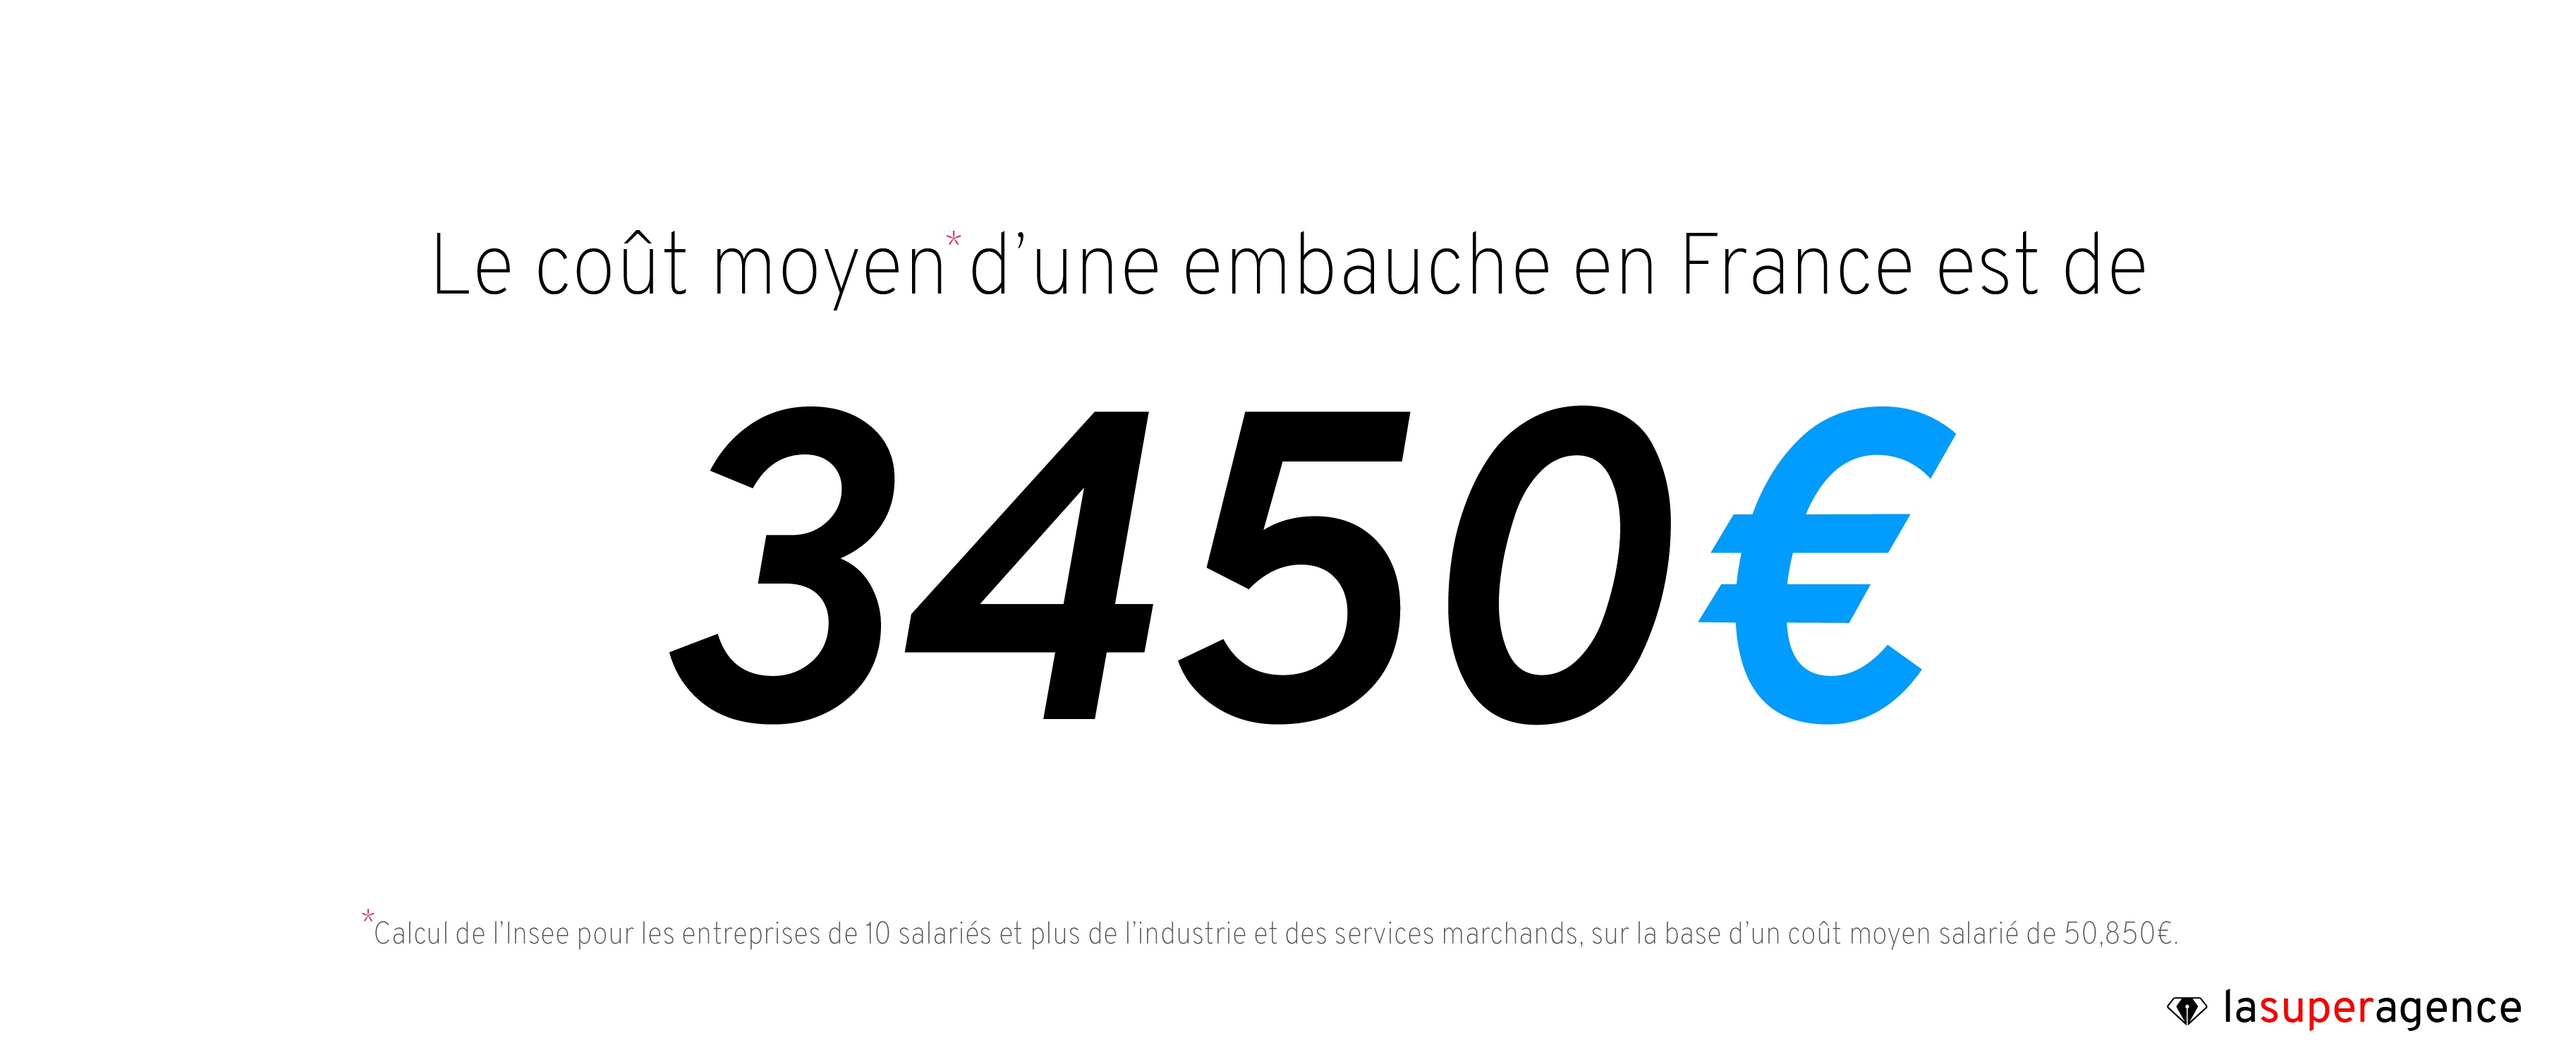 Selon l'INSEE, le coût moyen d'une embauche est d'environ 3450 euros